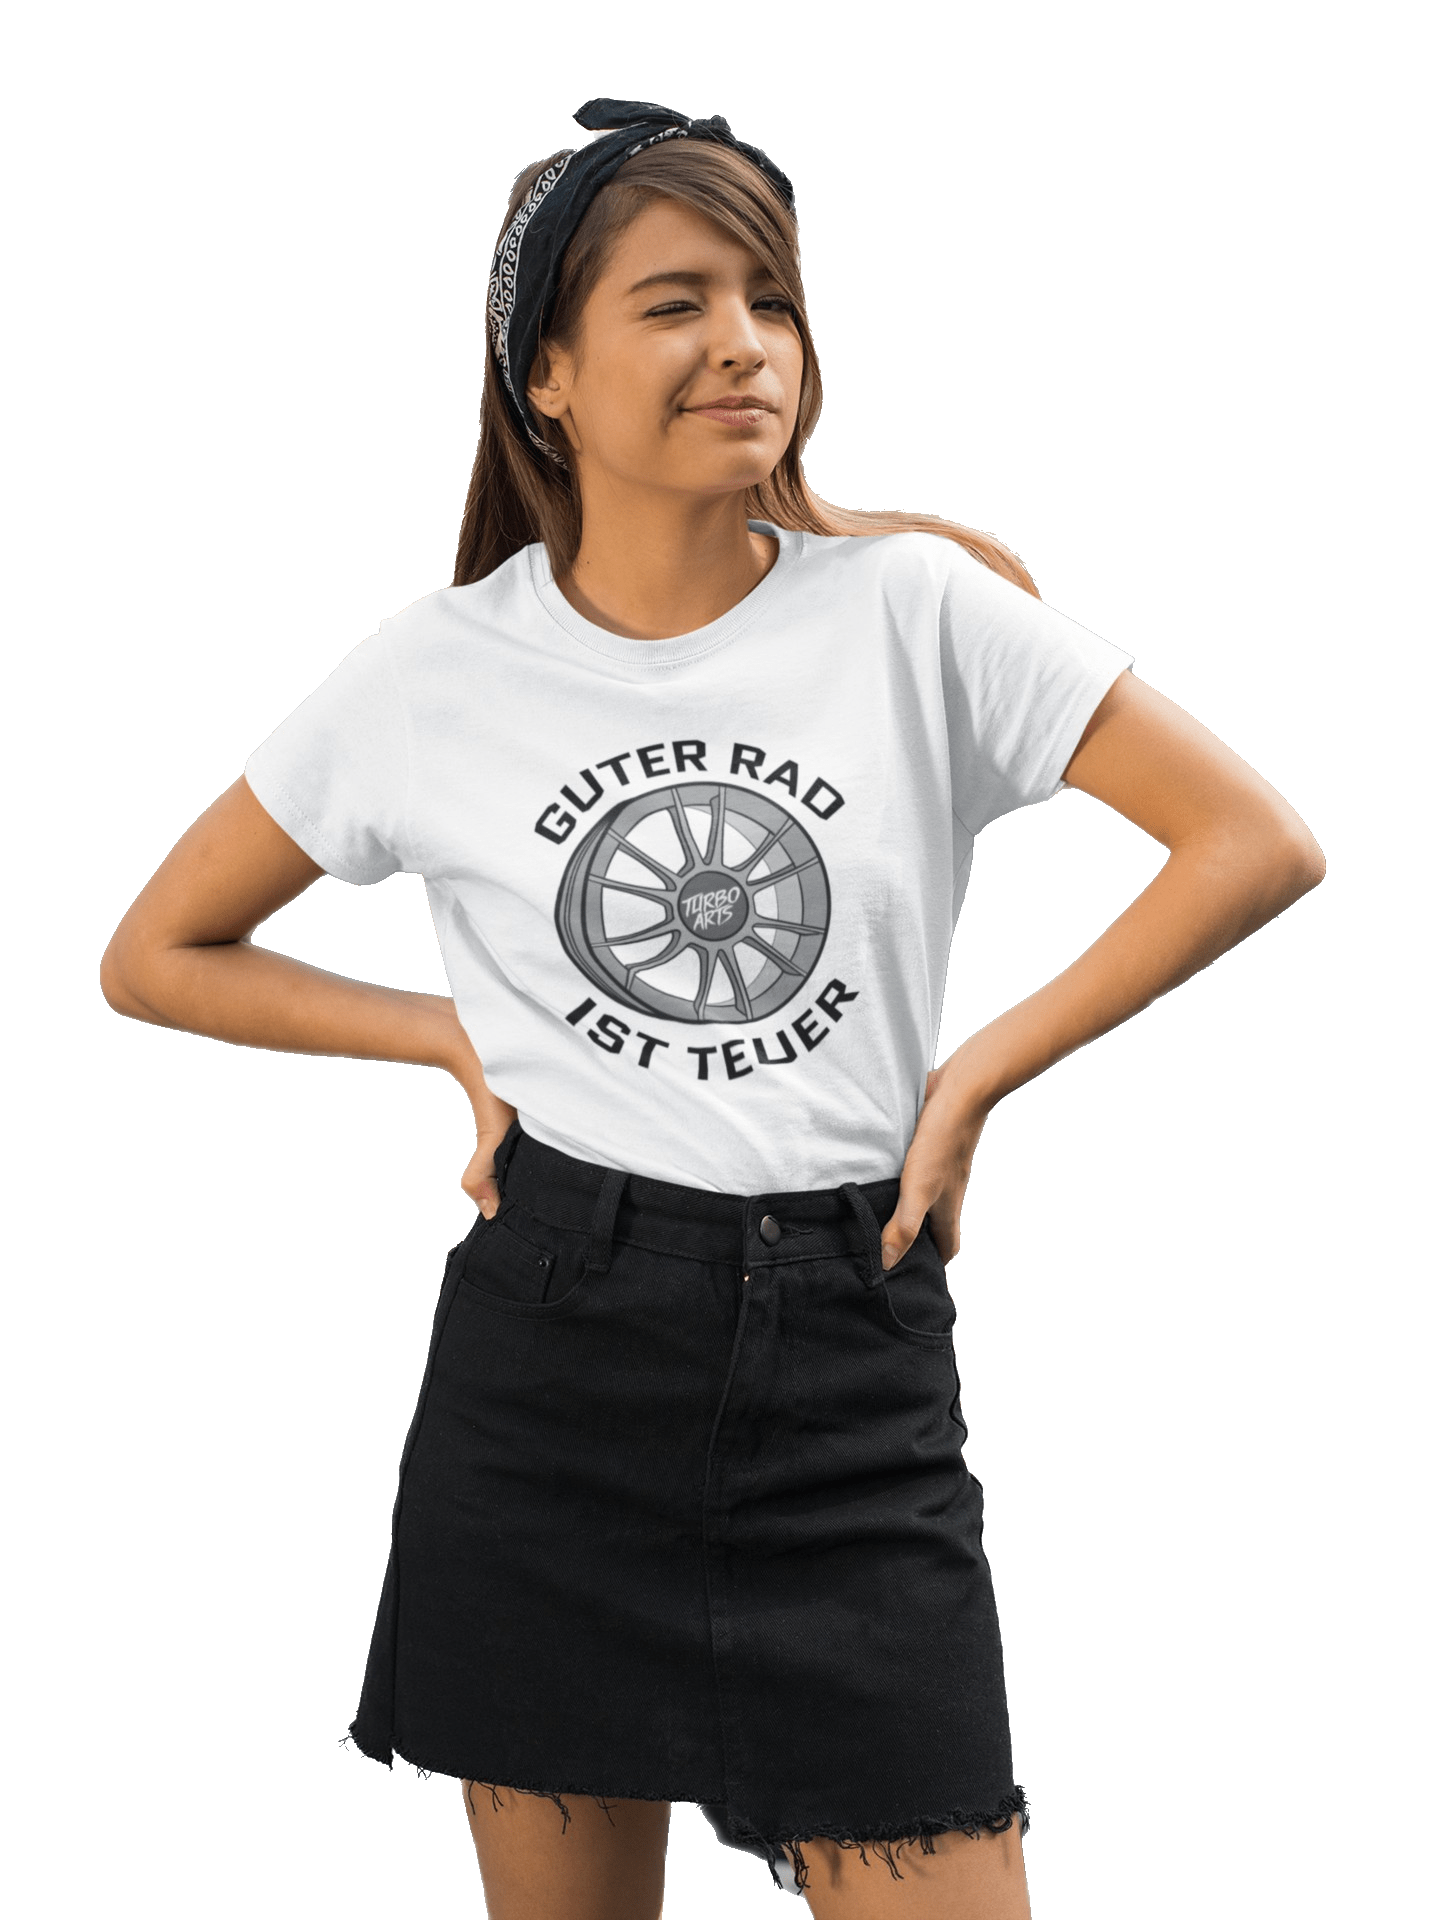 Guter Rad ist teuer - Damen T-Shirt von TurboArts